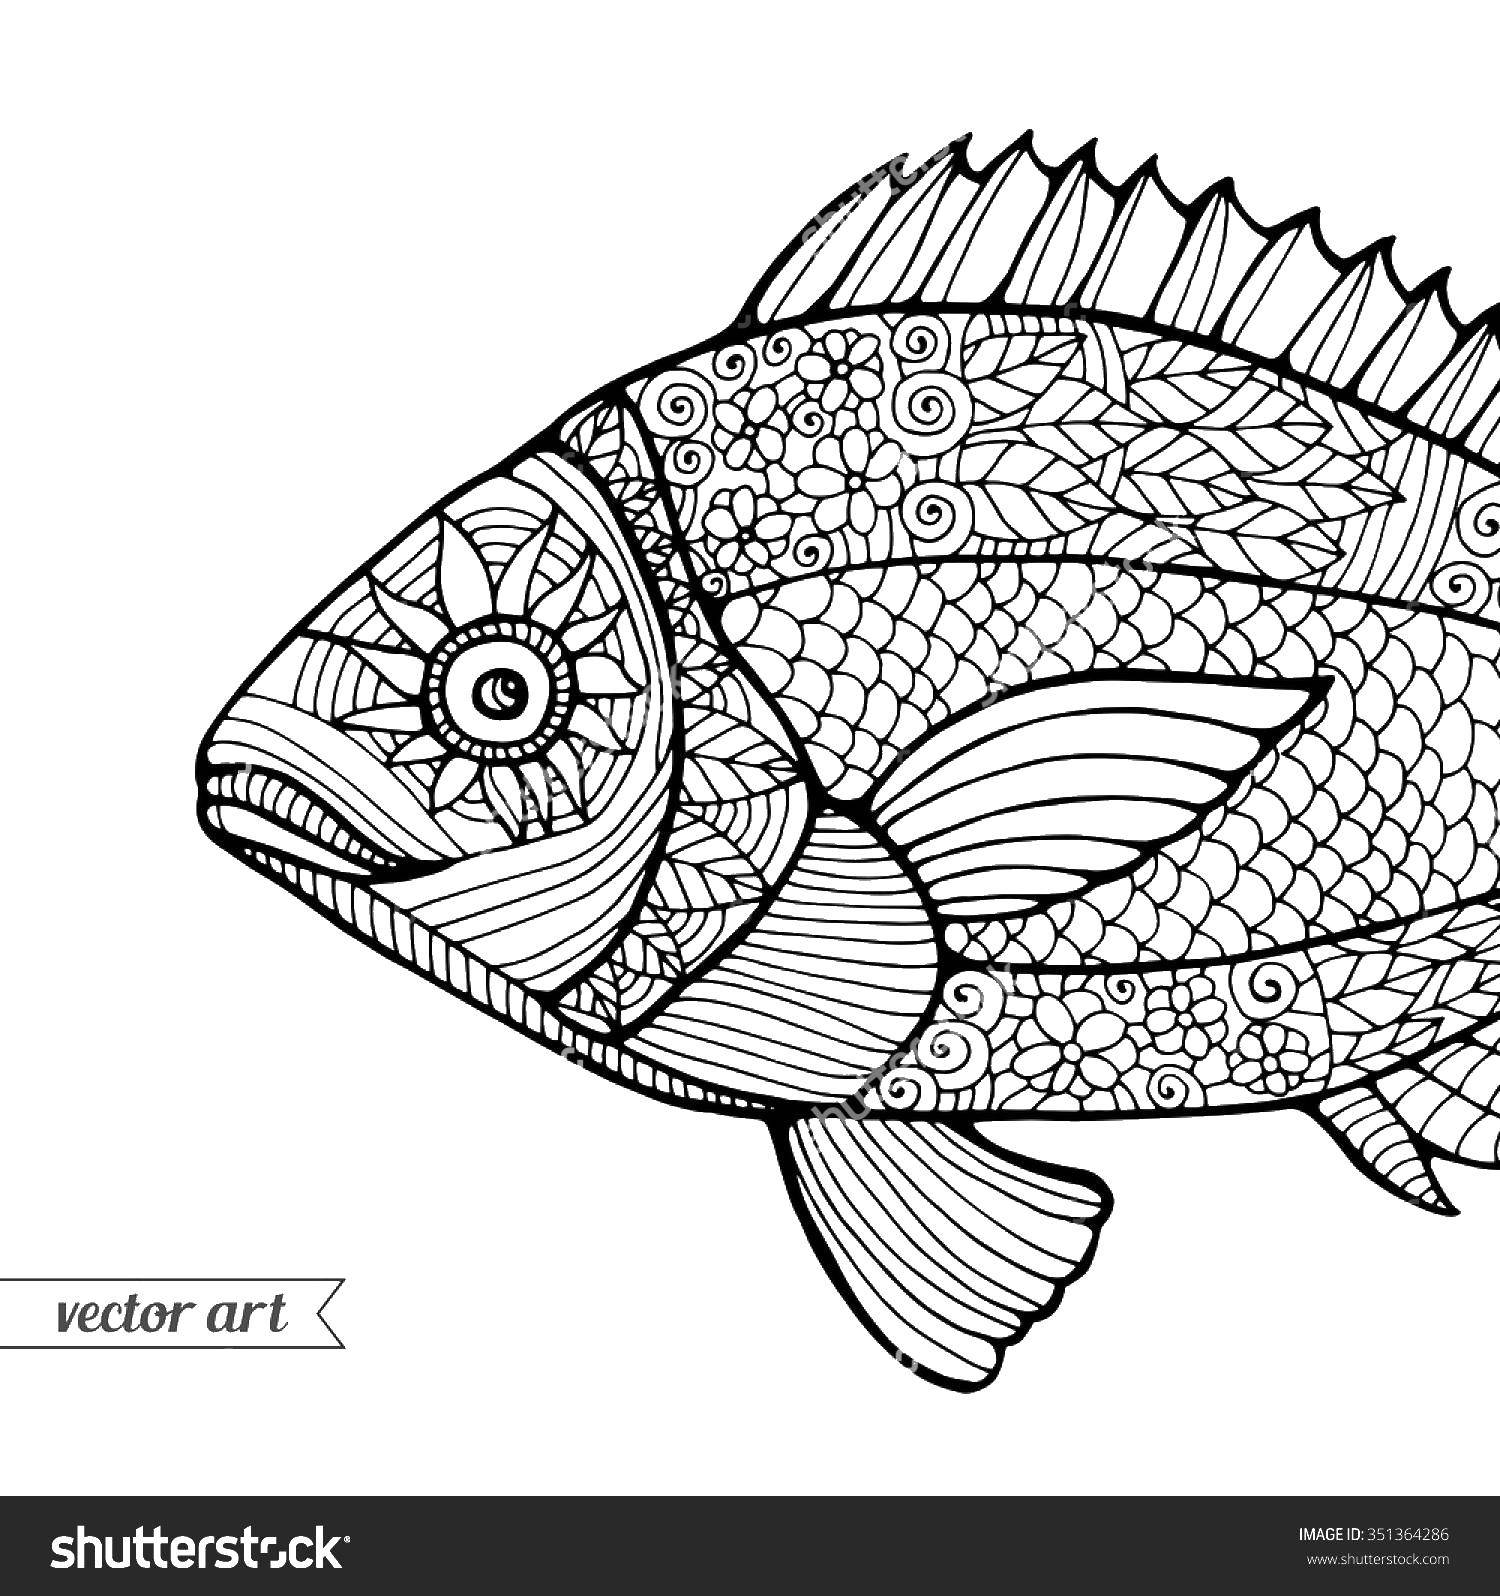 Название: Раскраска Рыба в узорах. Категория: узоры. Теги: узоры, рыбы.